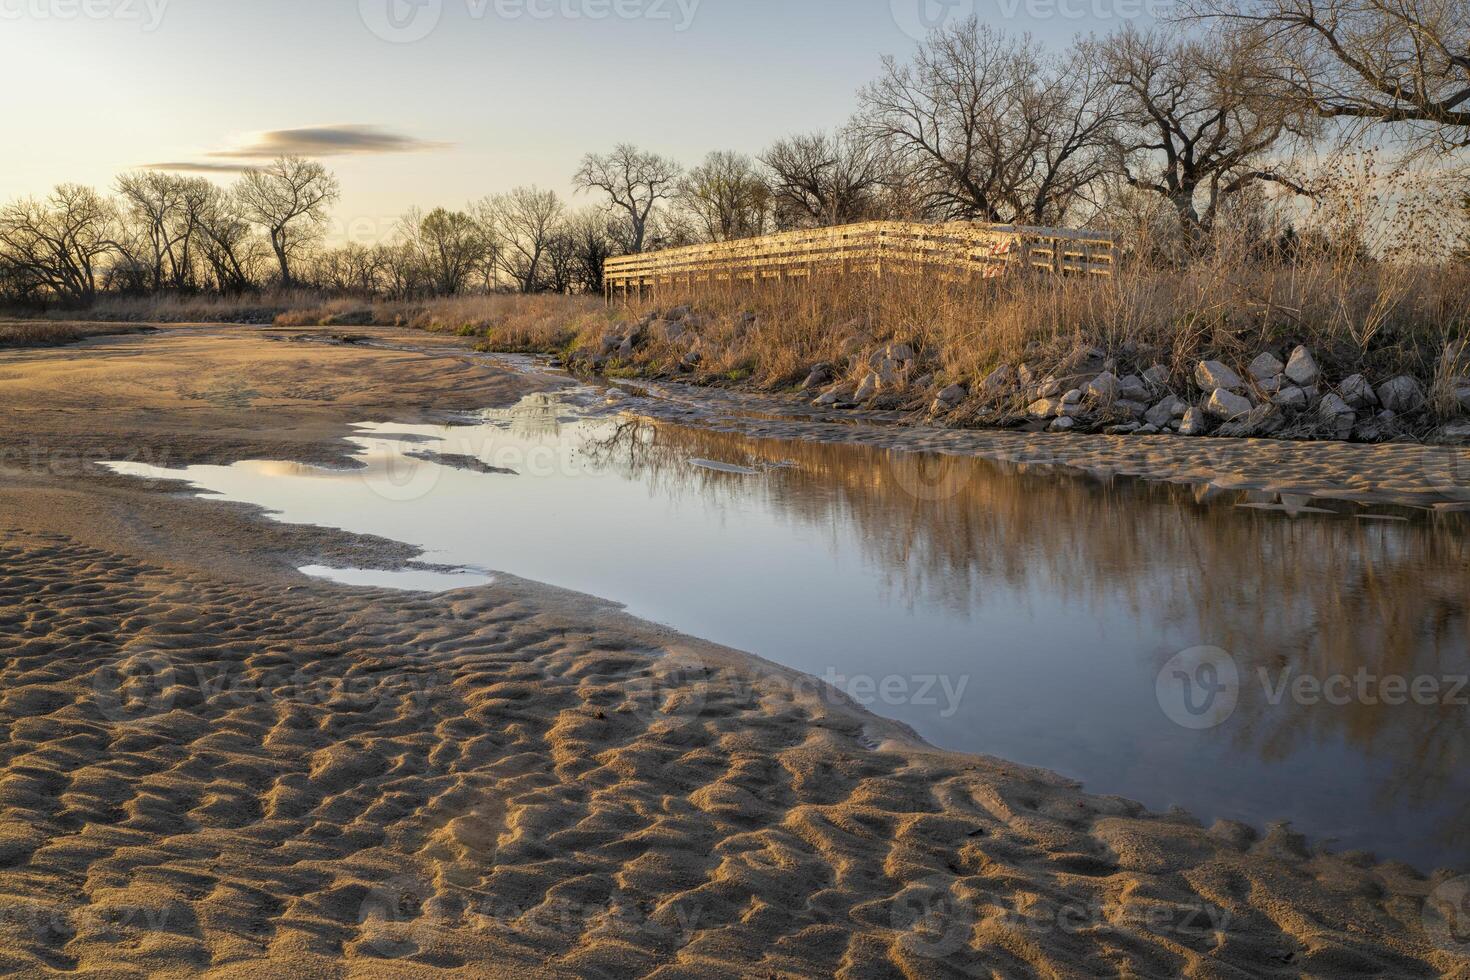 Ricardo plautz grua visita sitios sur de gibón, Nebraska, proporciona un seguro plataforma para espectacular puntos de vista de grúas, garzas, garcetas, pelícanos, y otro aves en el platte río foto